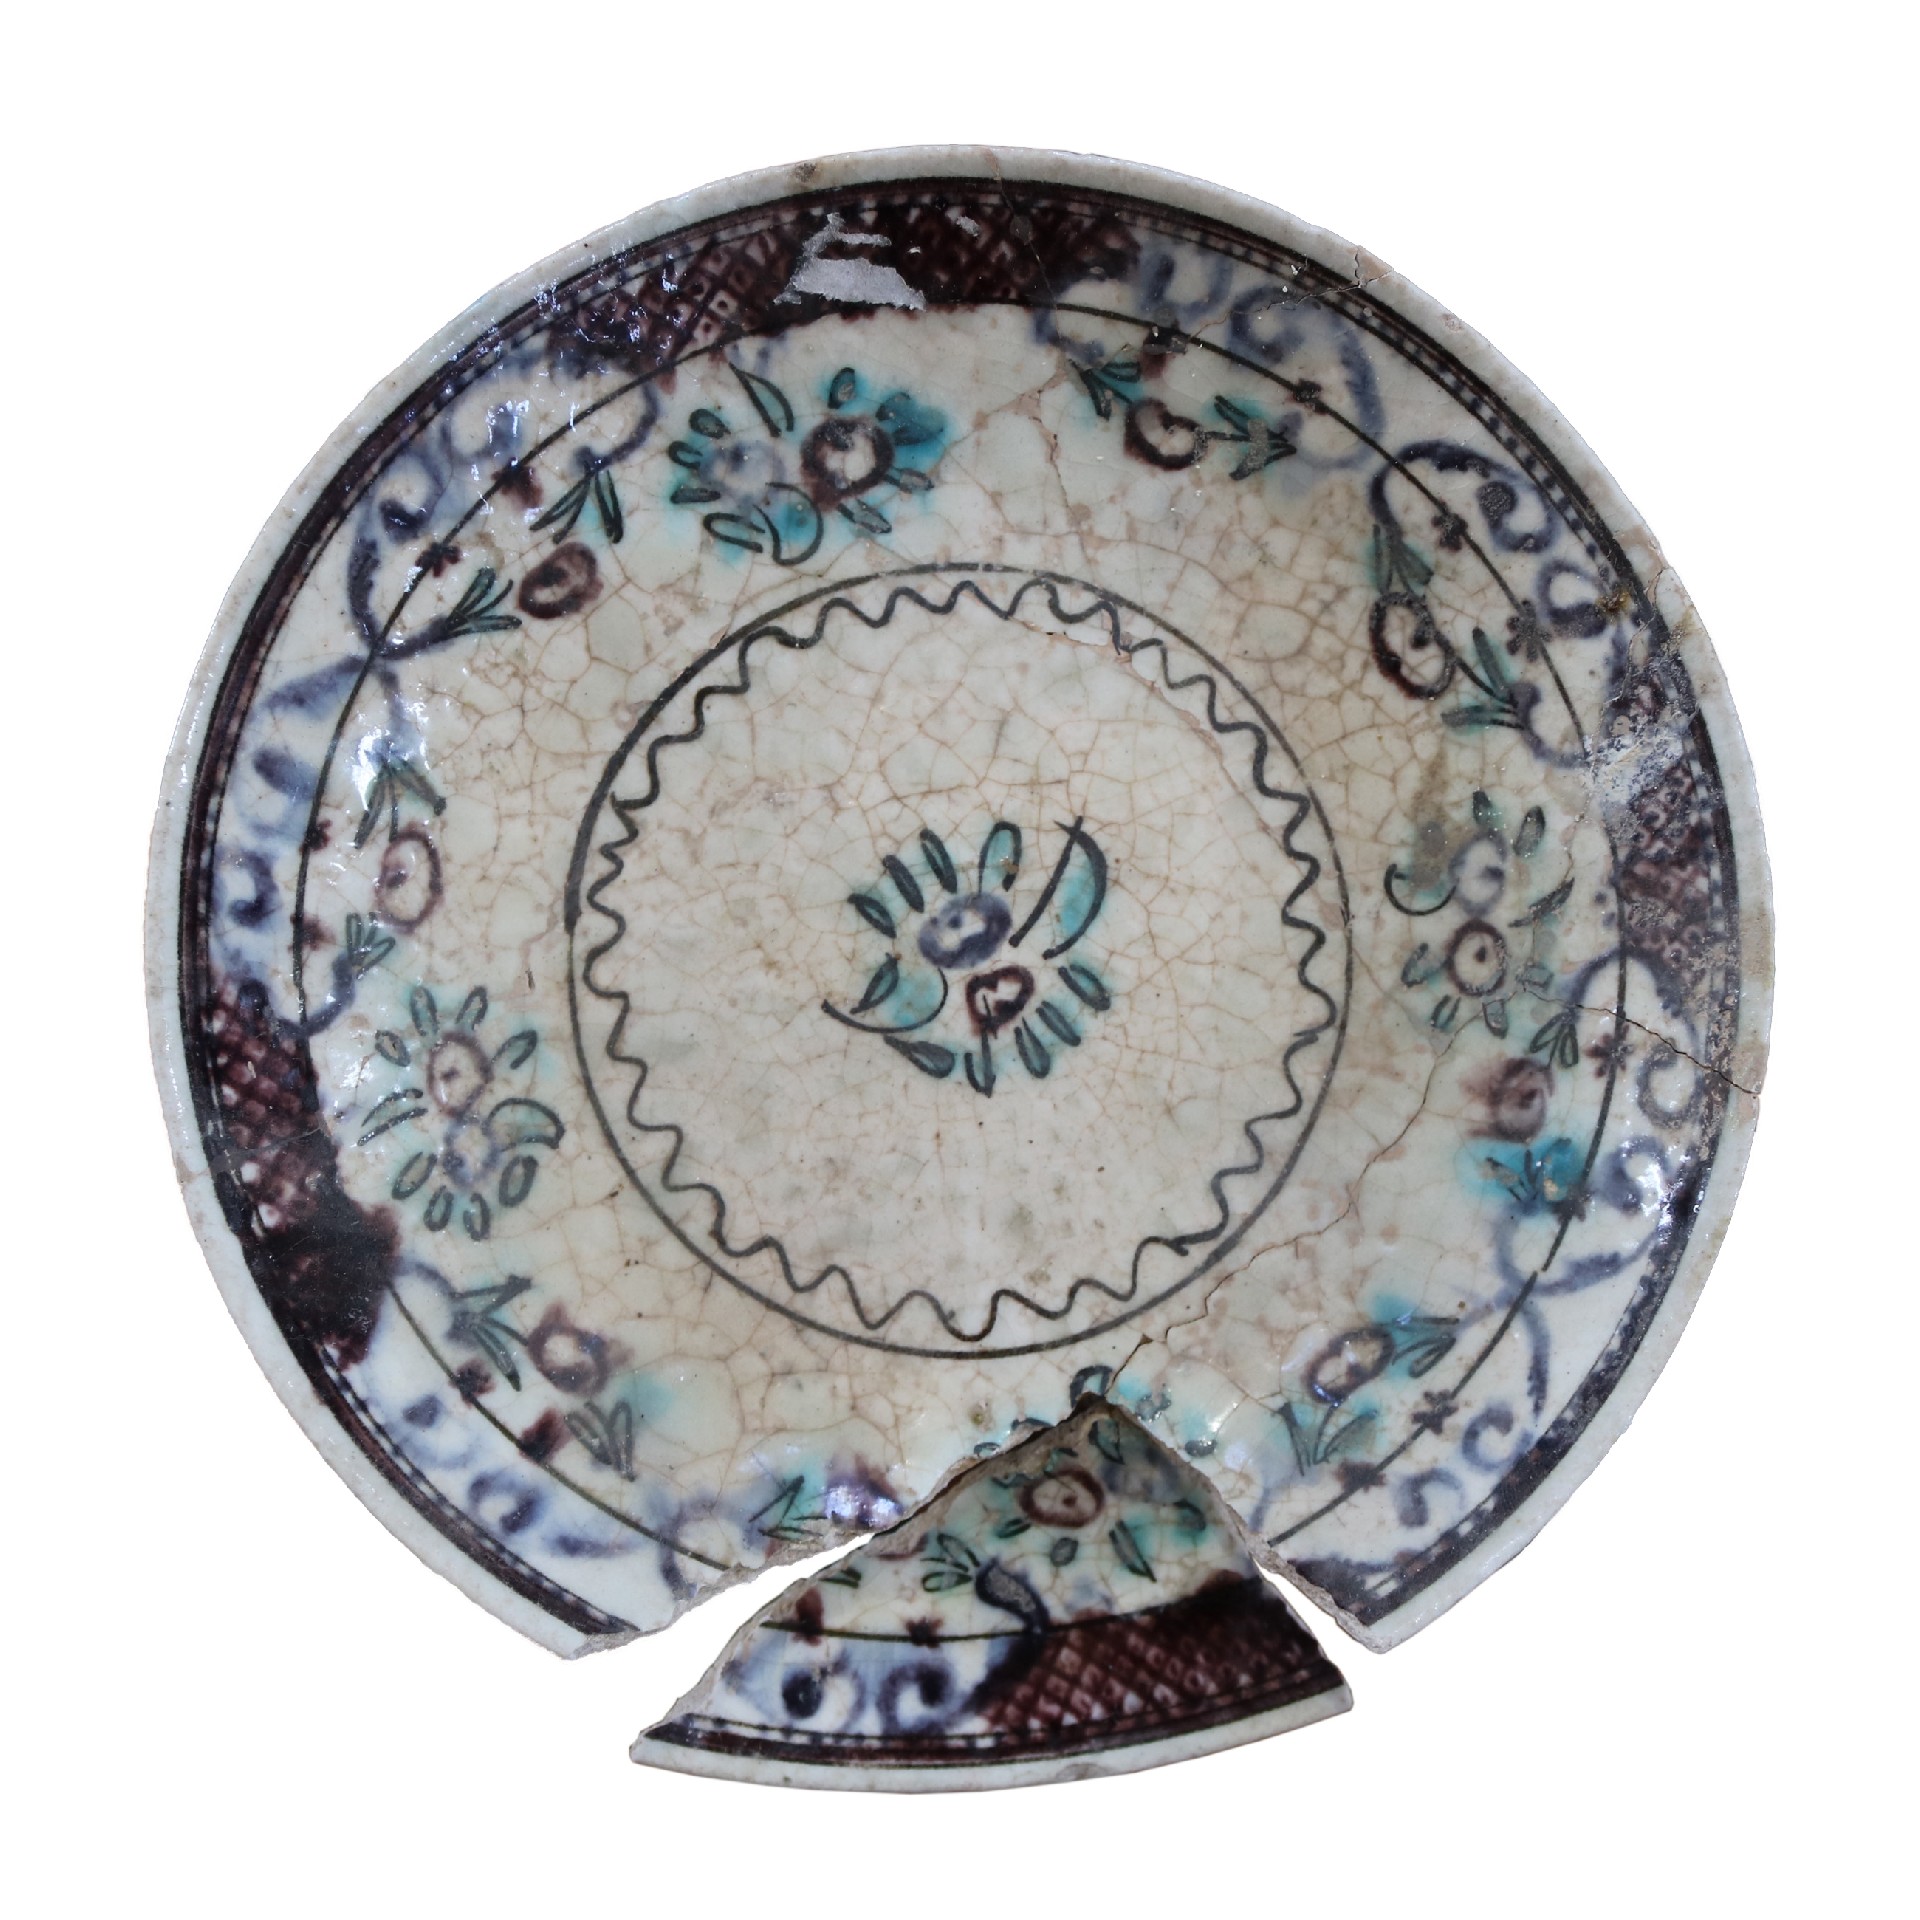 Antico piatto in maiolica. Epoca inizi 1900. - Ceramiche - Oggettistica - Prodotti - Antichità Fiorillo